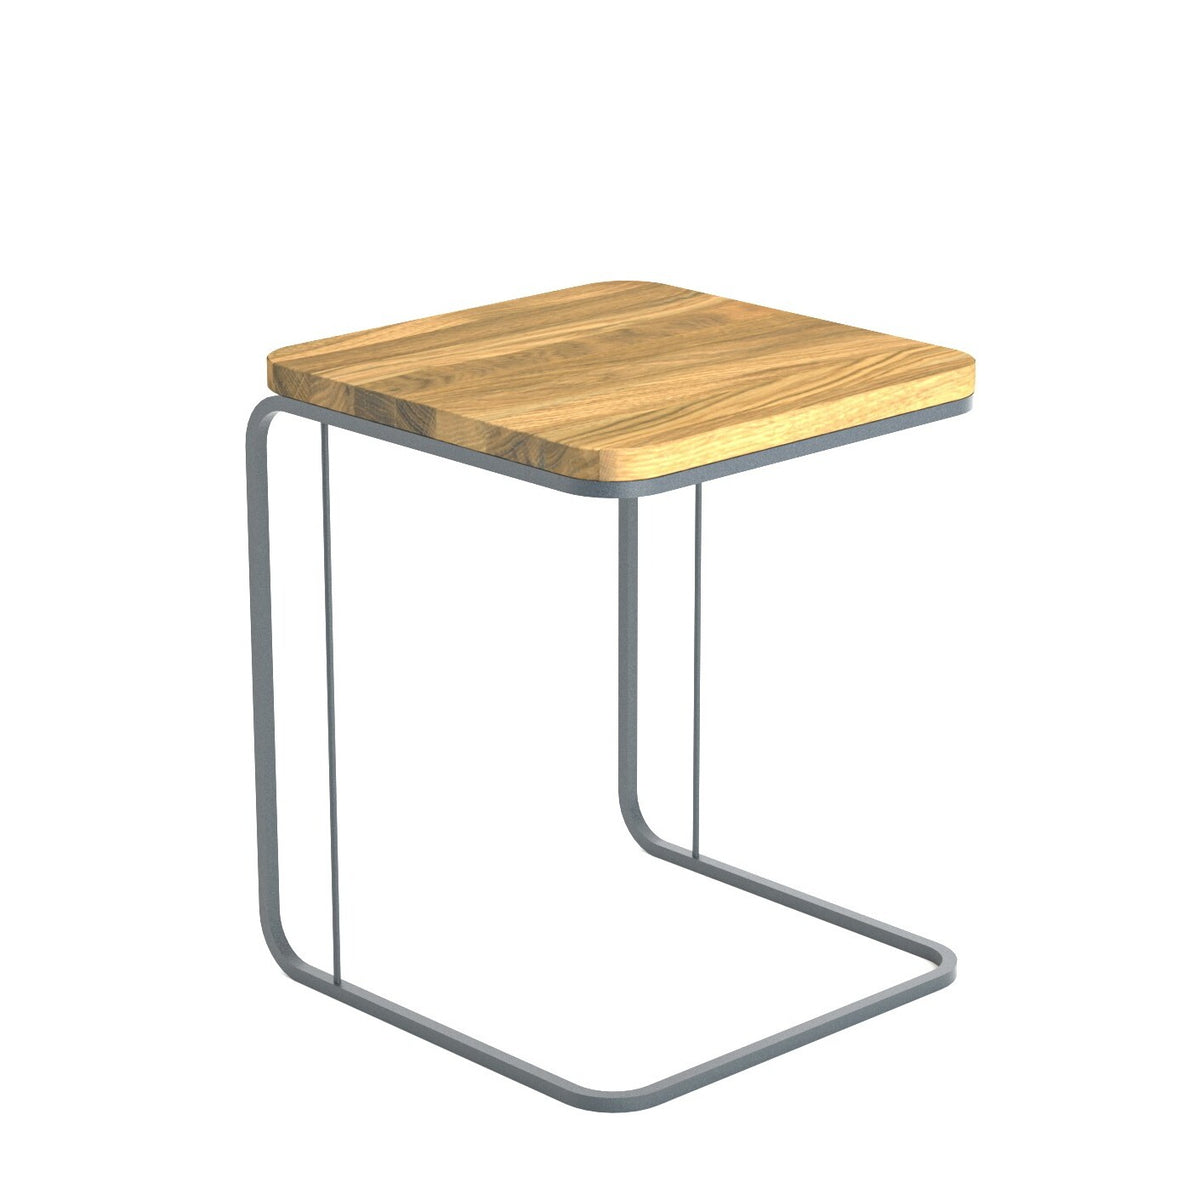 Přístavný stolek Saley